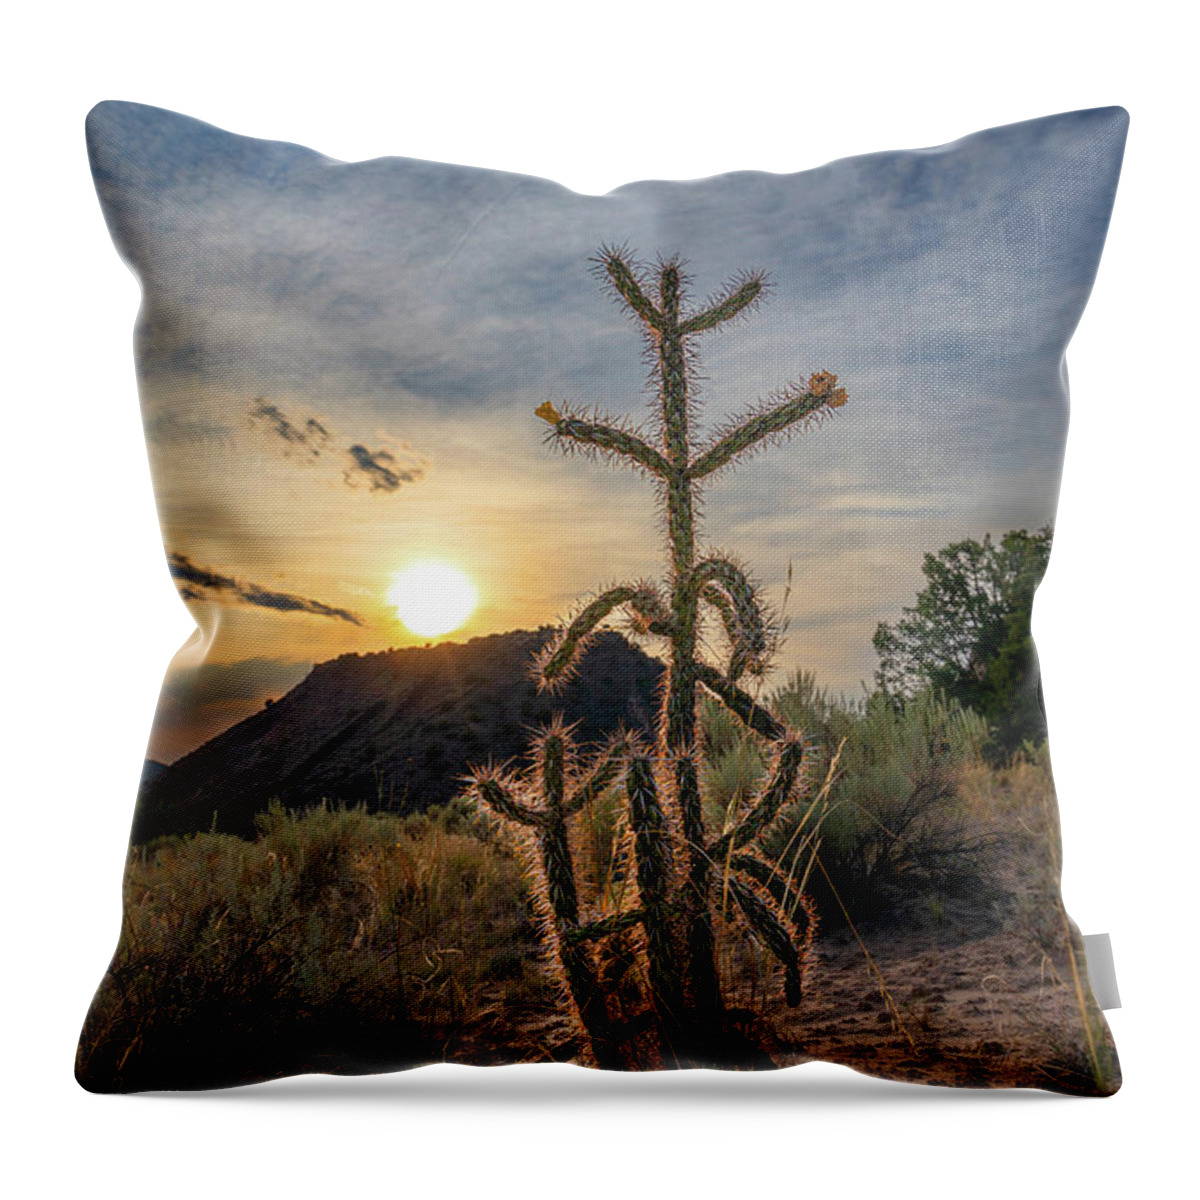 Taos Throw Pillow featuring the photograph Dixon Cactus 1 by Elijah Rael